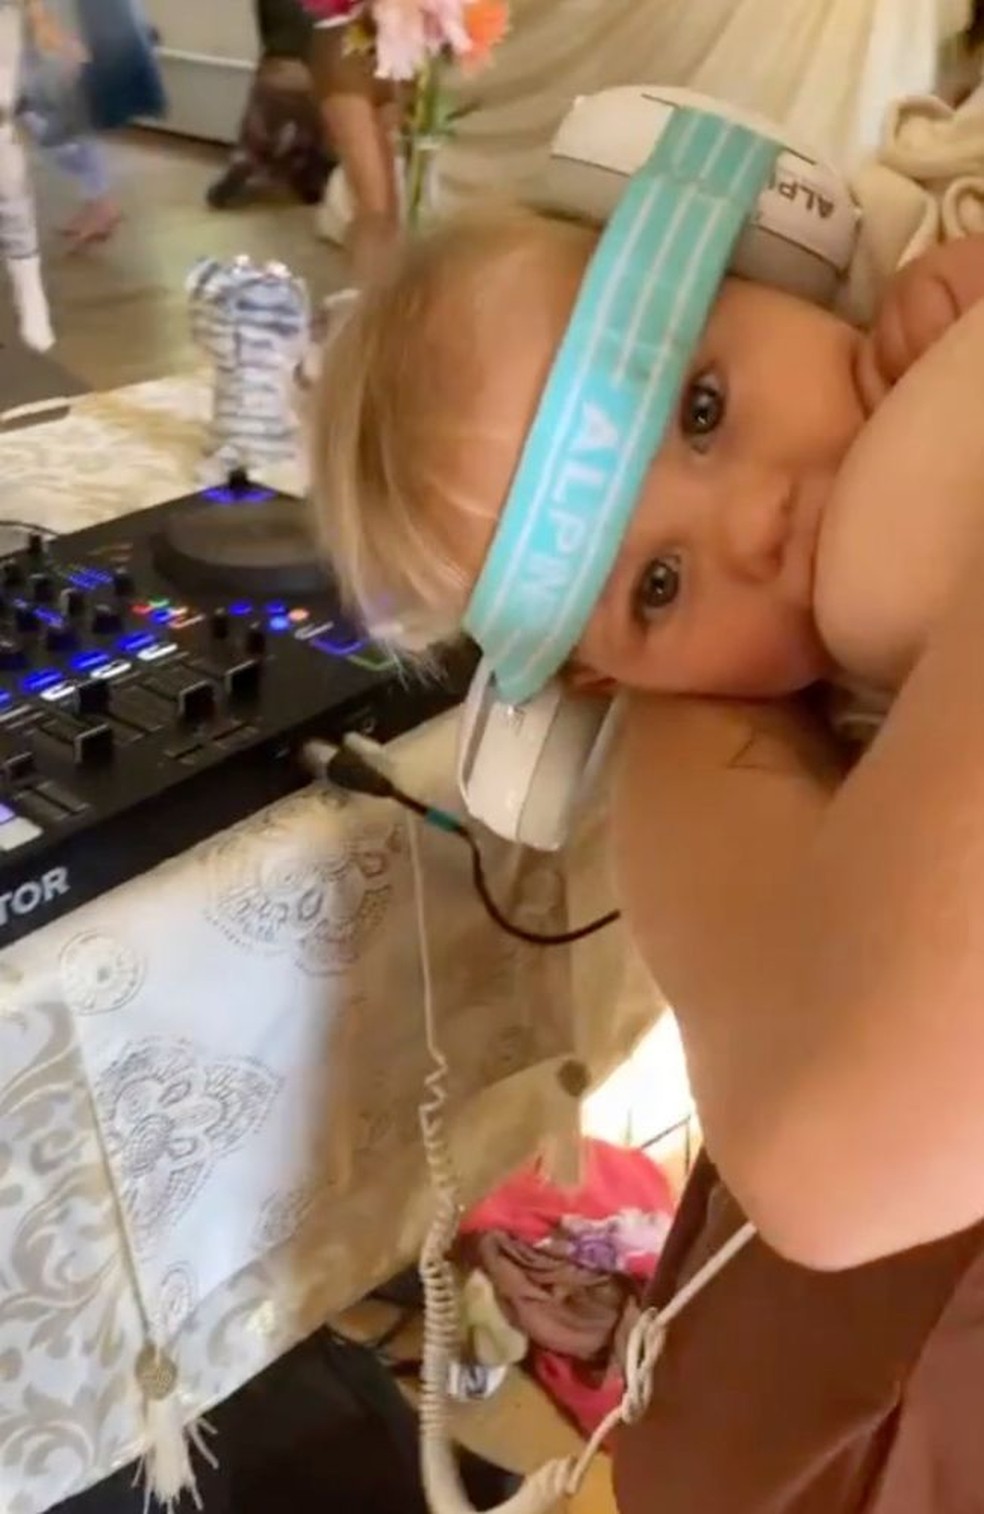 Heather amamenta a filha enquanto toca músicas como DJ — Foto: Reprodução Kidspot